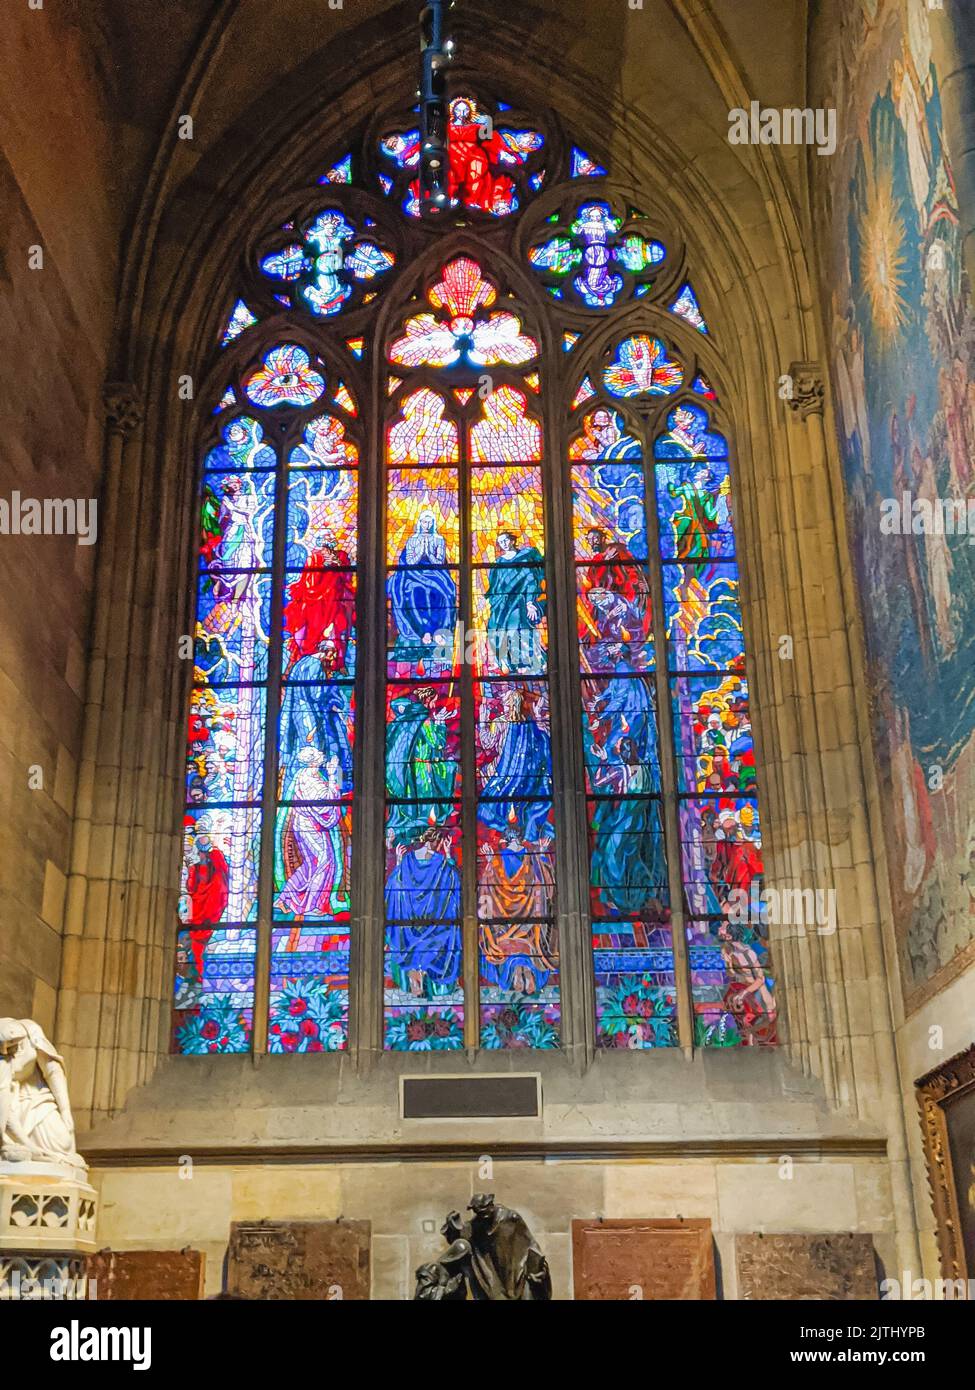 Stained glass window inside St. Vitus Cathedral (Katedrála Sv. Víta), Prague, Czech Republic Stock Photo